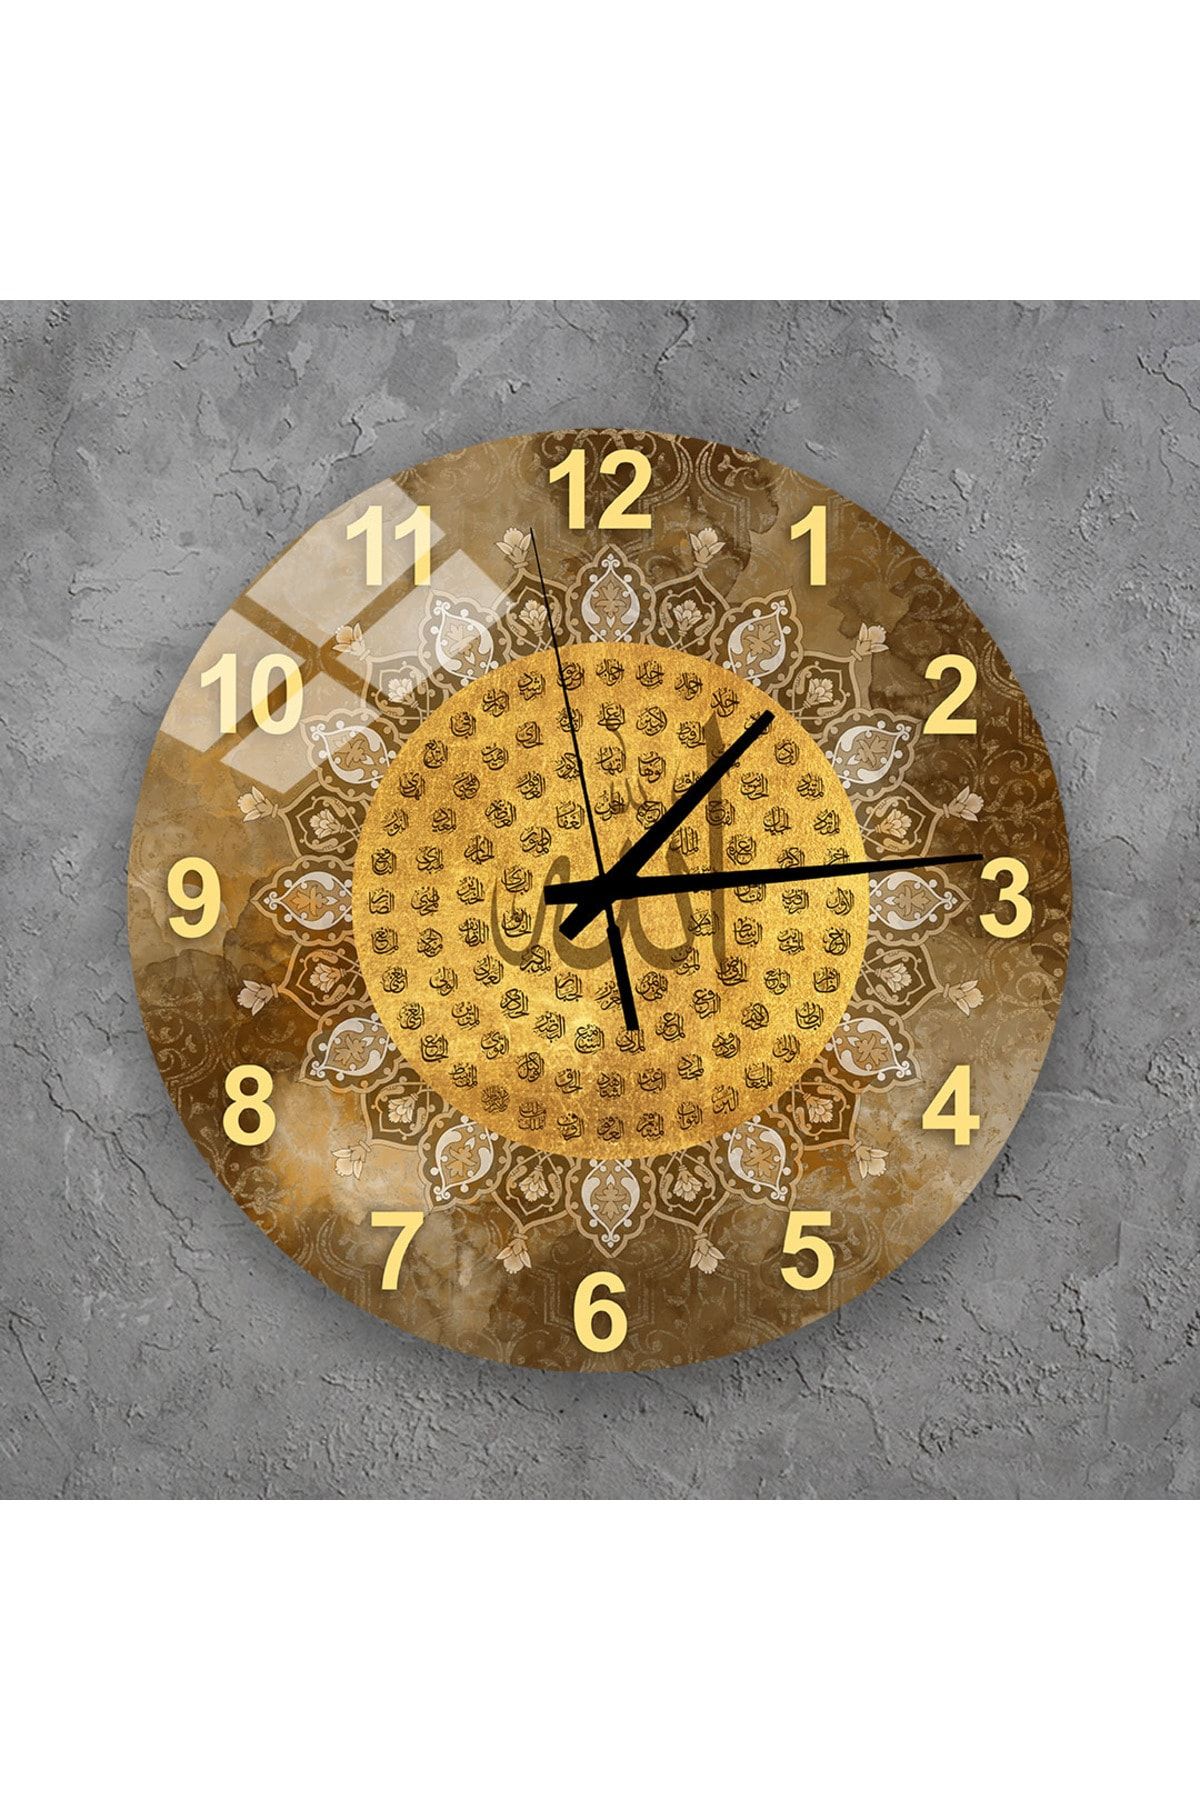 TekTablo Duvar Saati - Esma-ül Hüsna Yazılı Cam Duvar Saati, Salon İçin Saat Modelleri 36x36 cm 3TK985874199